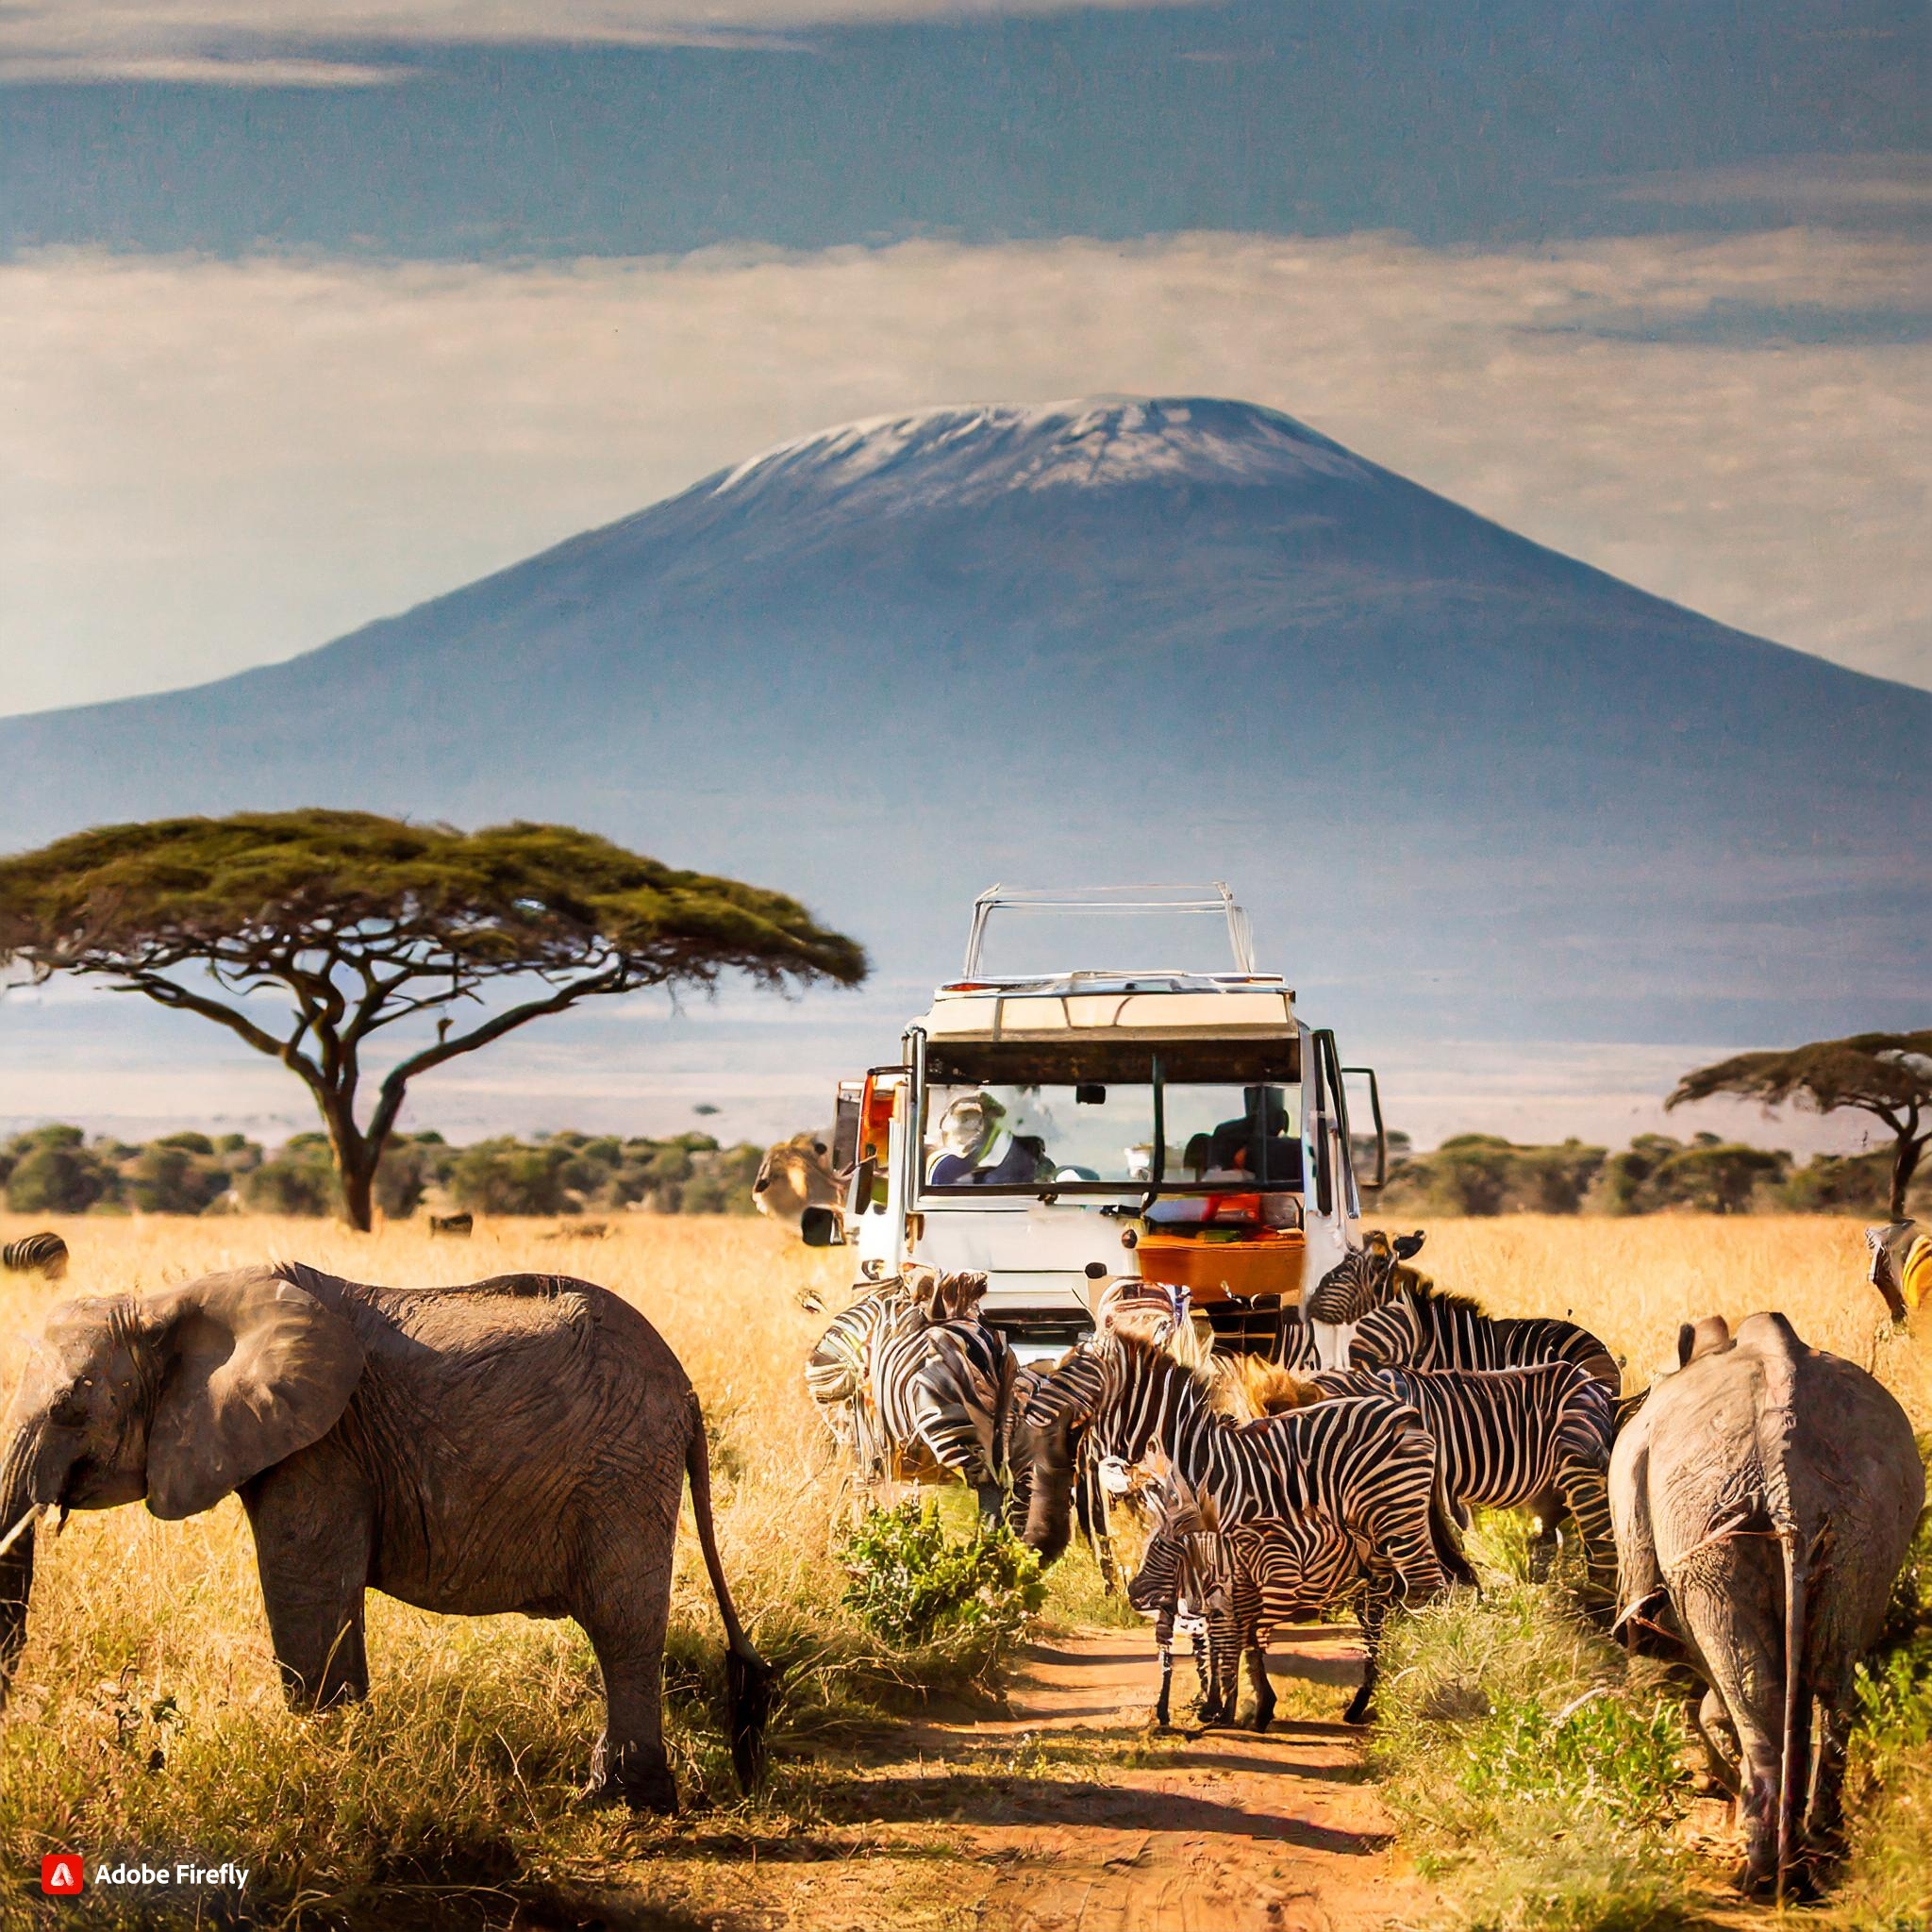  Safari in Kenya